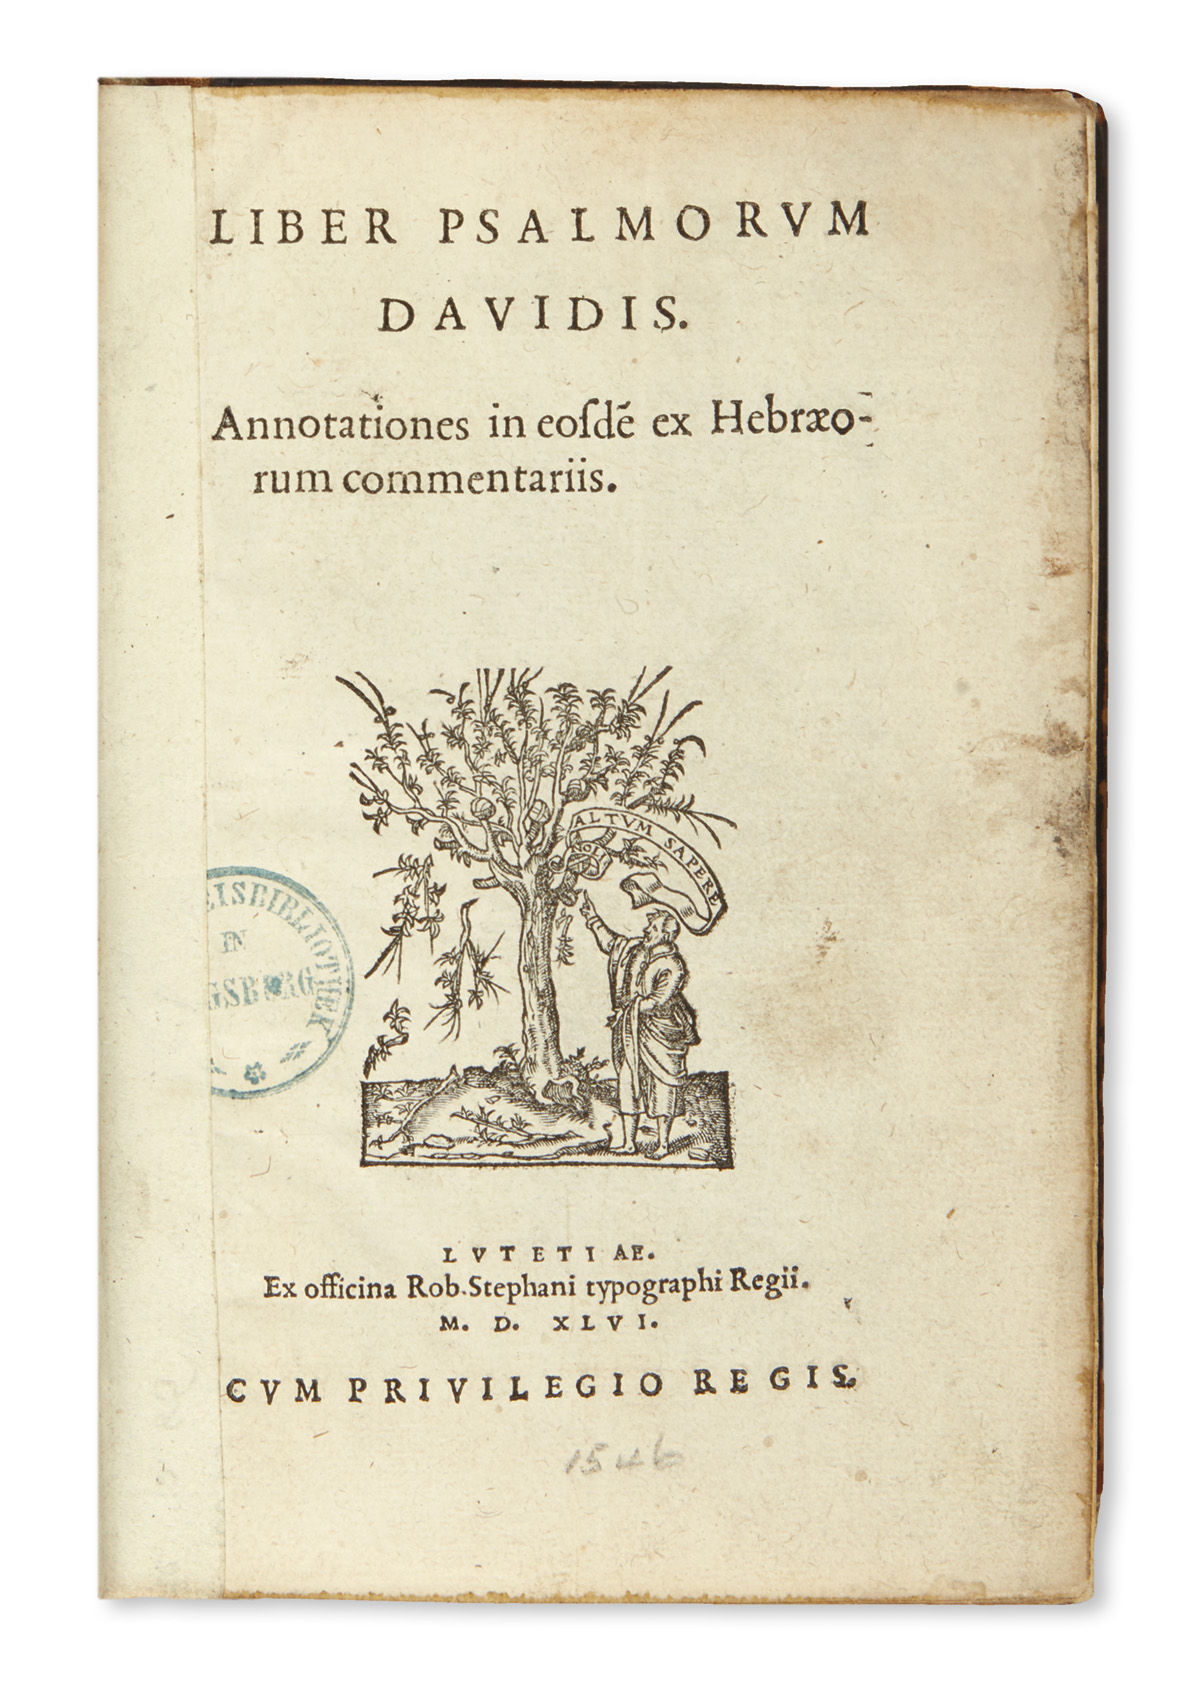 BIBLE IN LATIN.  Liber Psalmorum Davidis [with Cantica quae in Bibliis sparsim leguntur].  1546